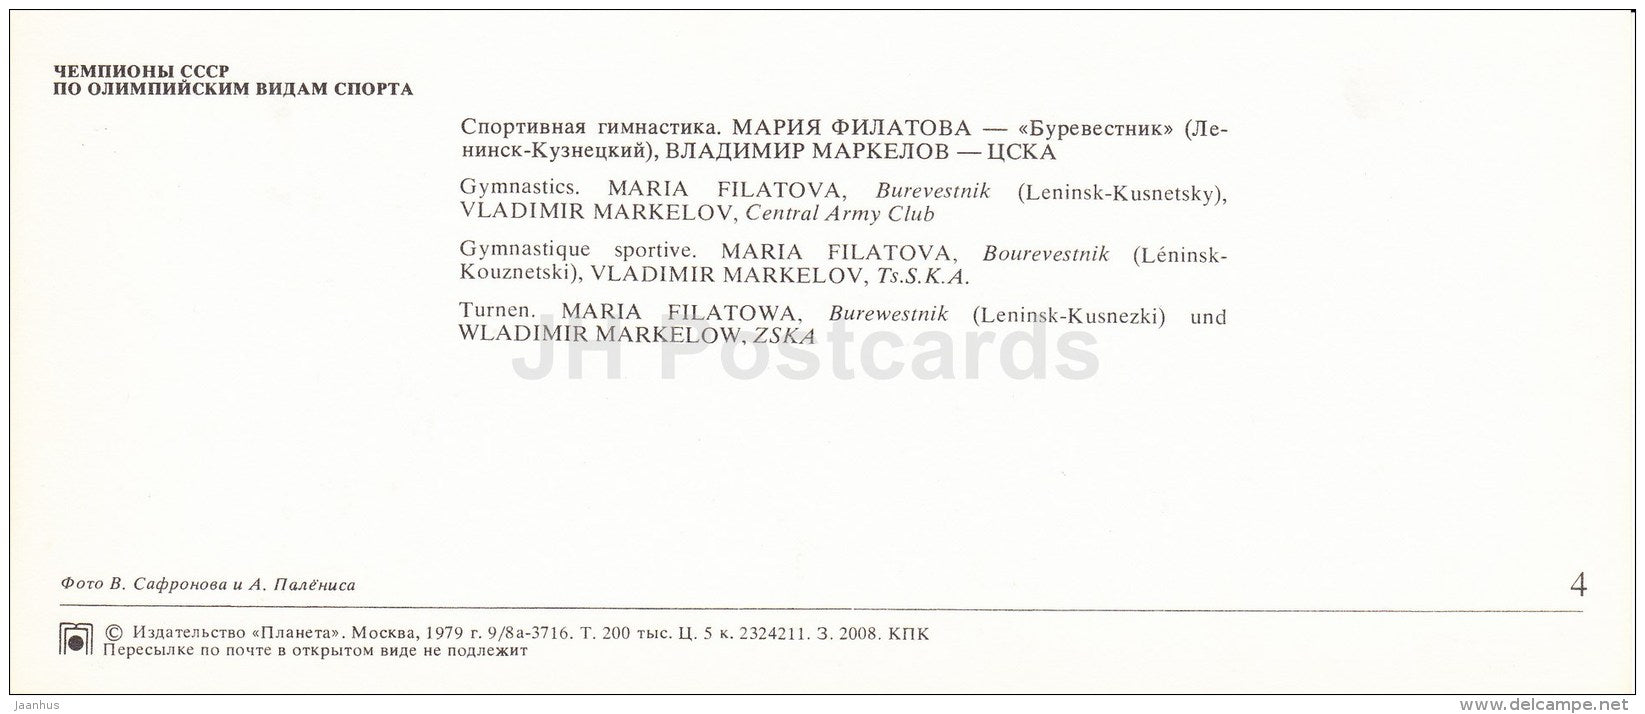 Maria Filatova - Vladimir Markelov - gymnastics - Soviet Olympic sport champions - 1979 - Russia USSR - unused - JH Postcards